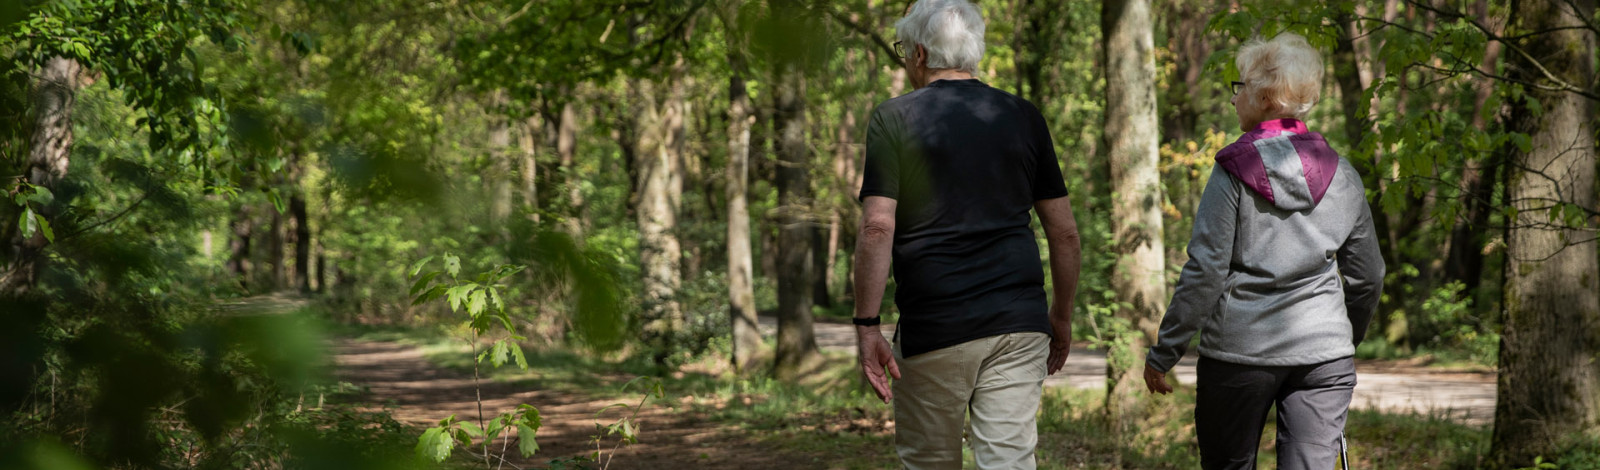 ouder echtpaar wandelt door het bos